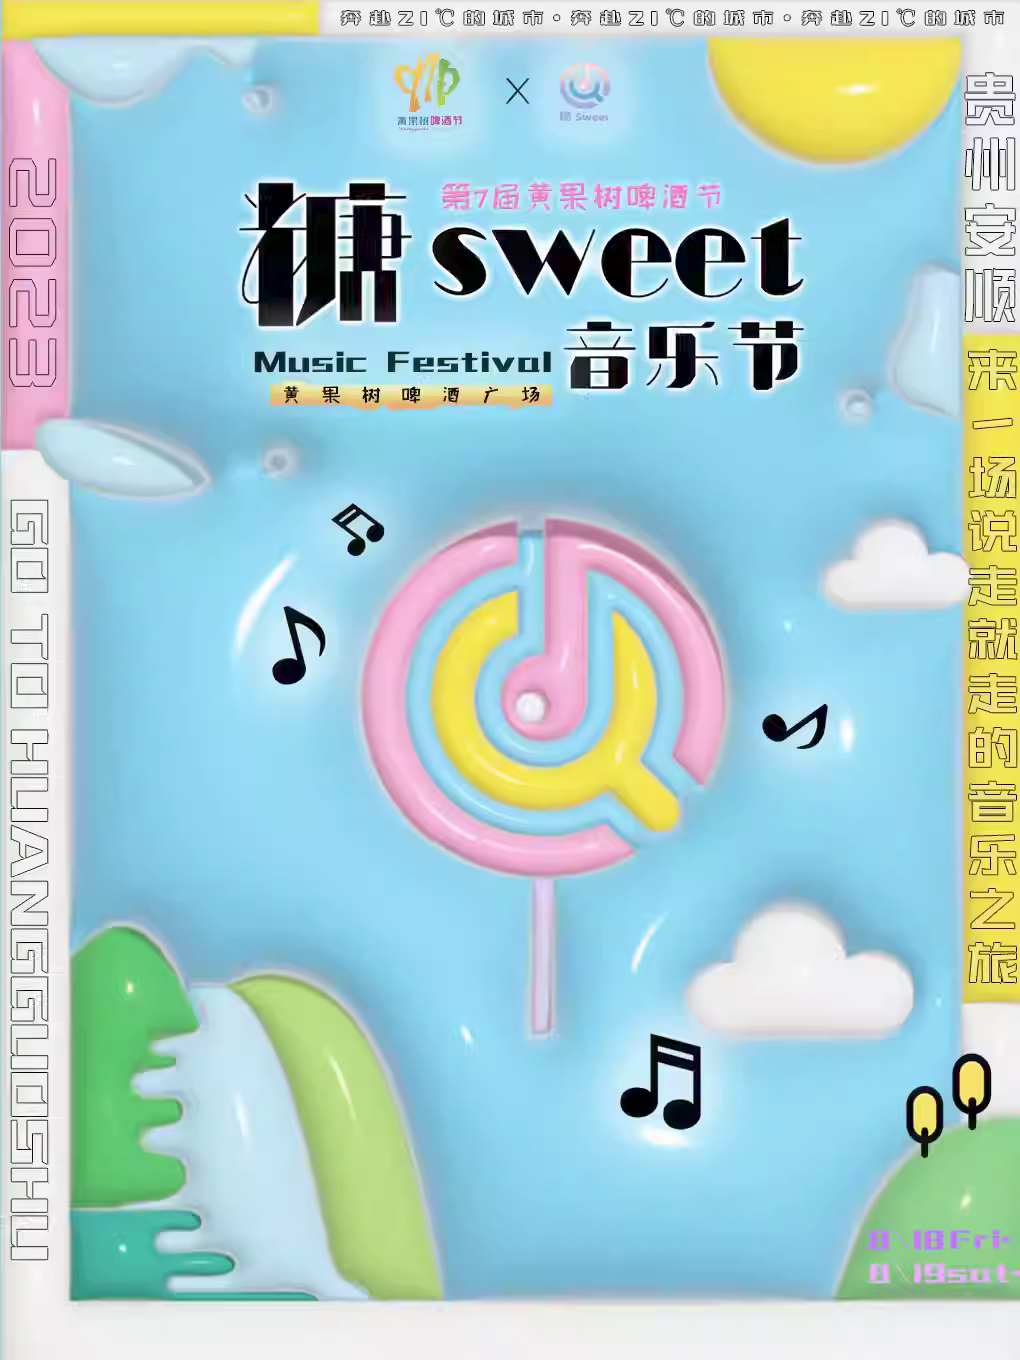 【安顺】糖sweet音乐节